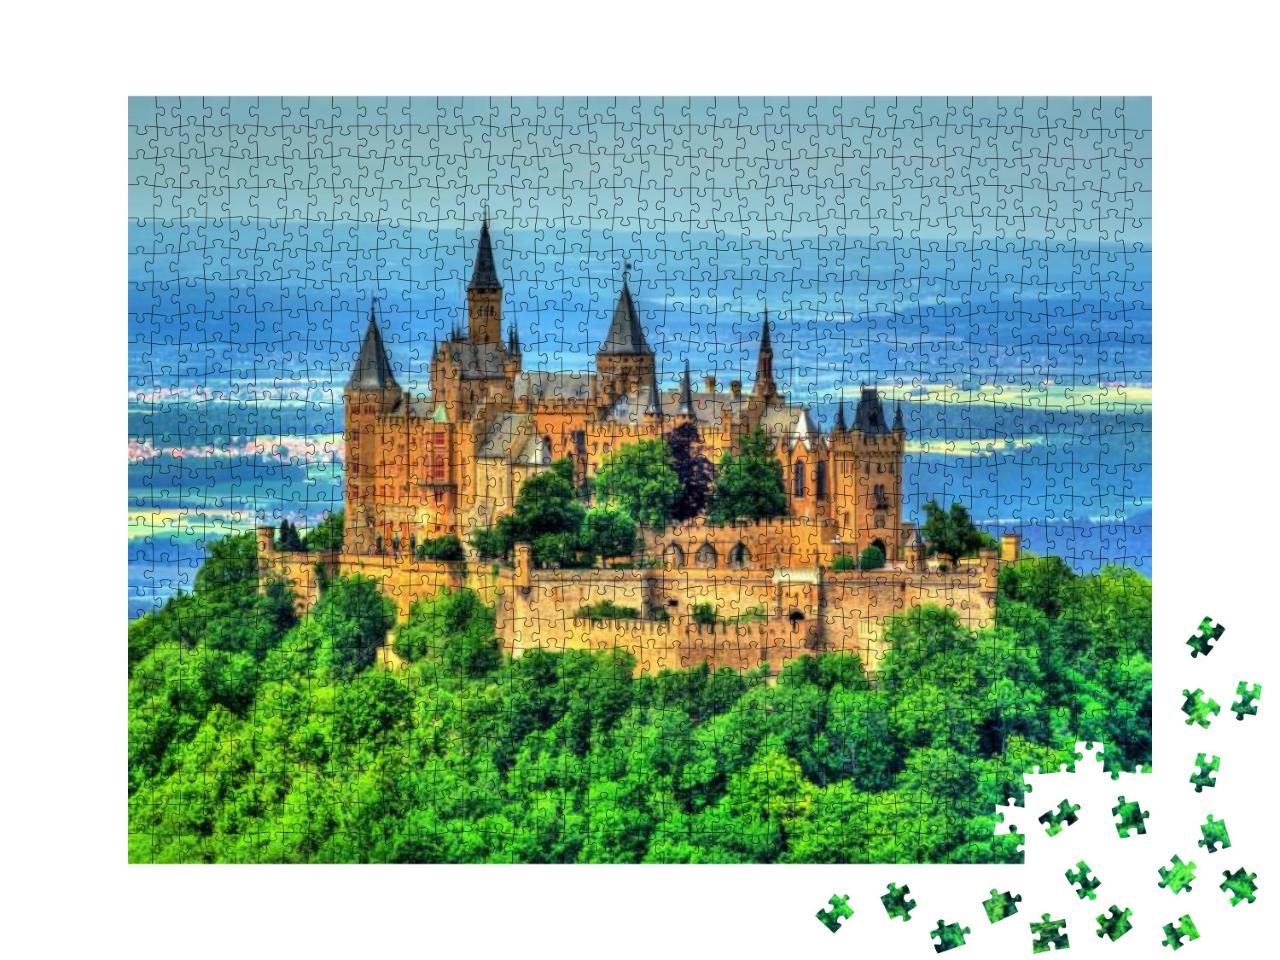 Puzzle 1000 Teile „Burg Hohenzollern auf der Schwäbischen Alb“